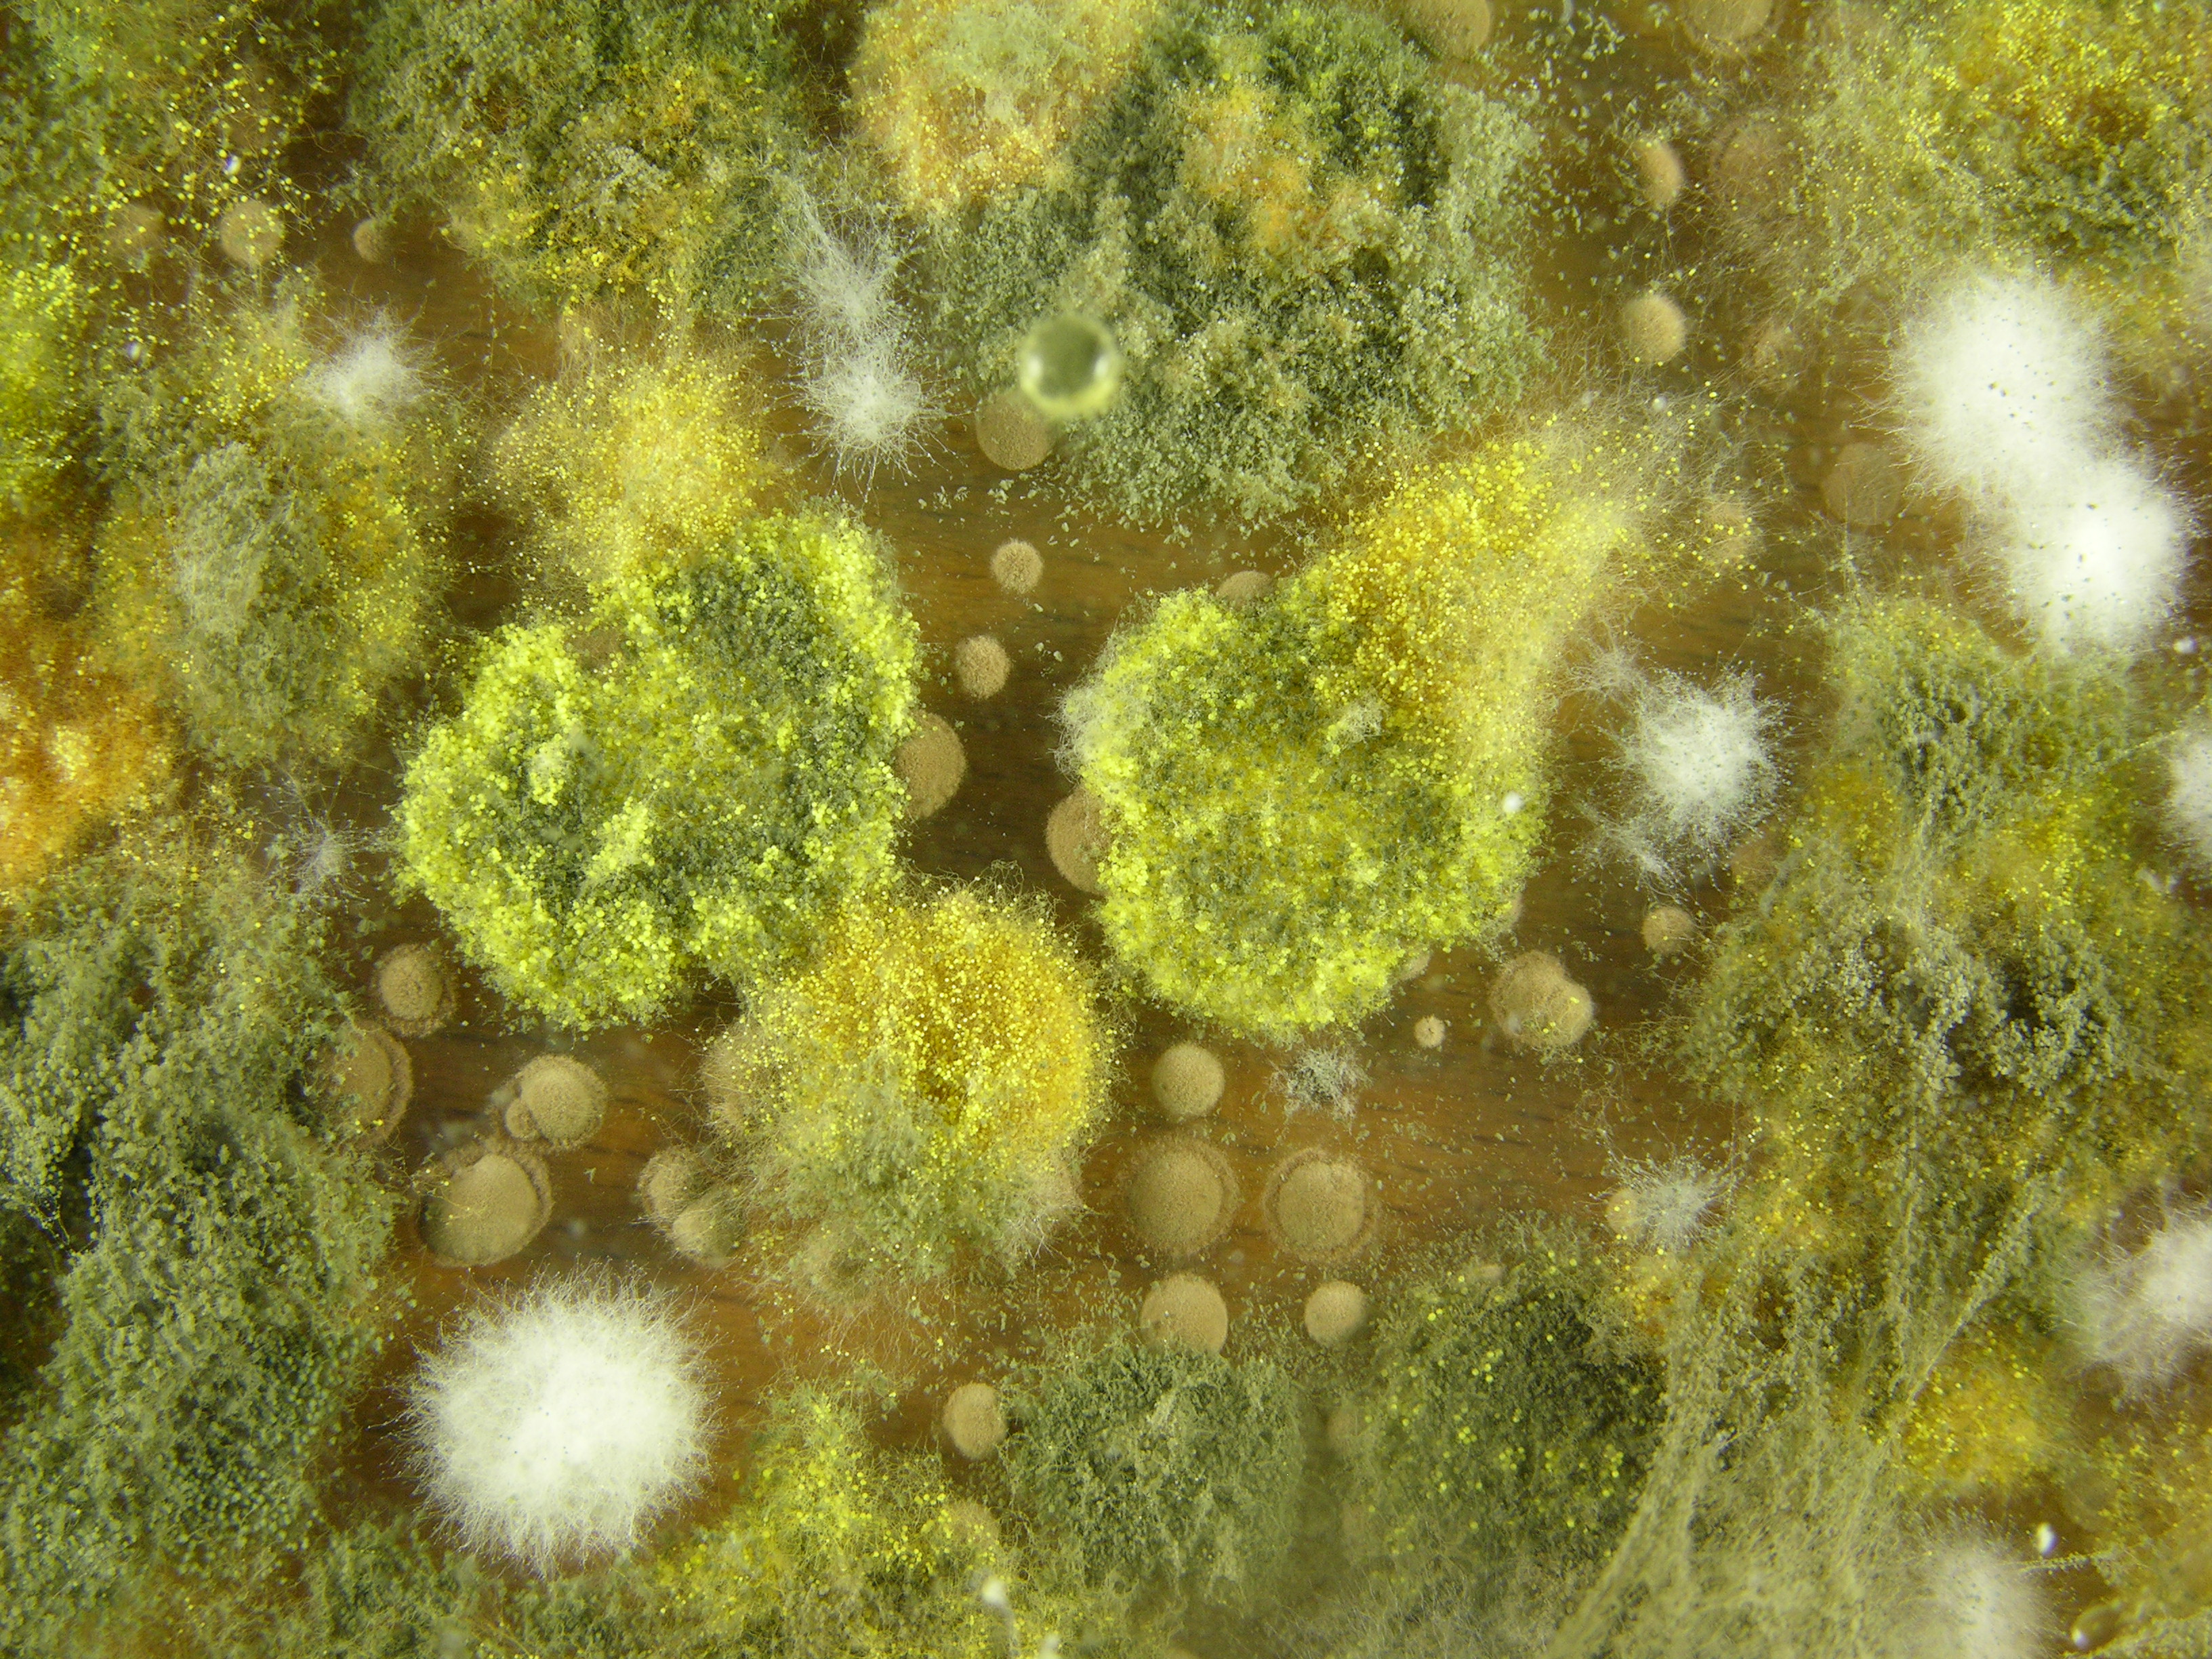 Vergrößerte Aufnahme eines Schimmelpilz mit Sporen